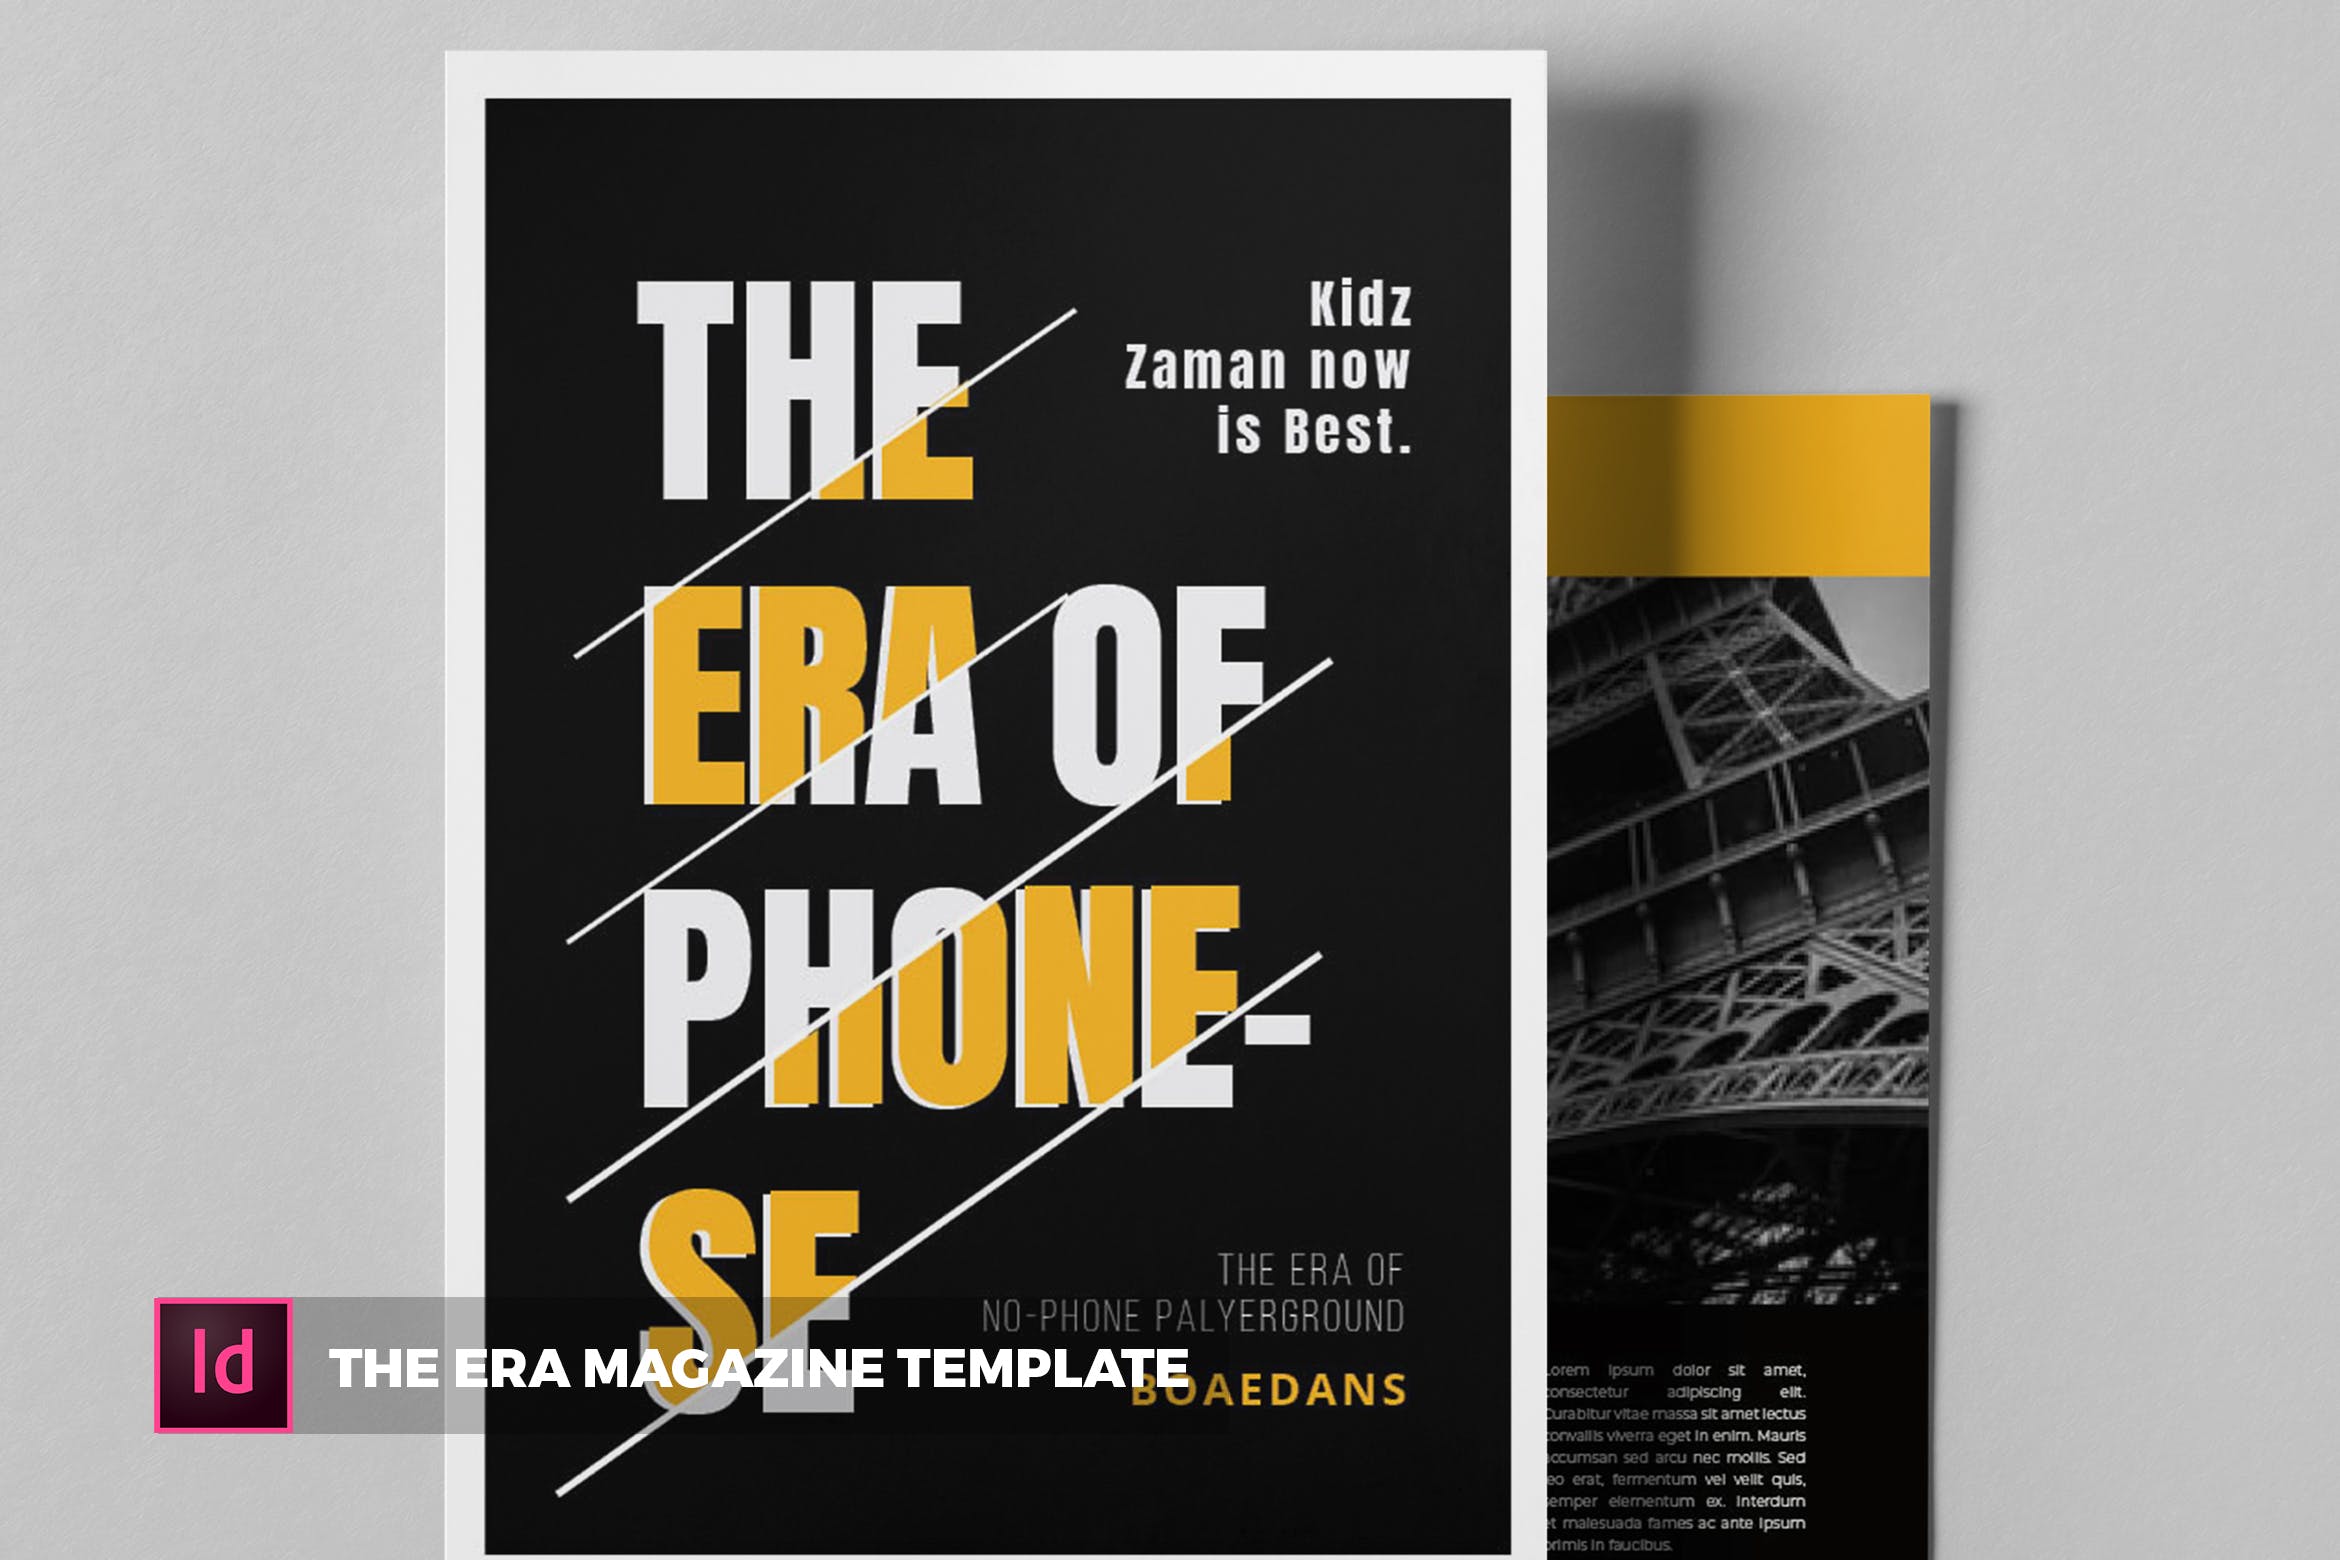 时代人物事件杂志排版设计模板 The Era | Magazine Template插图